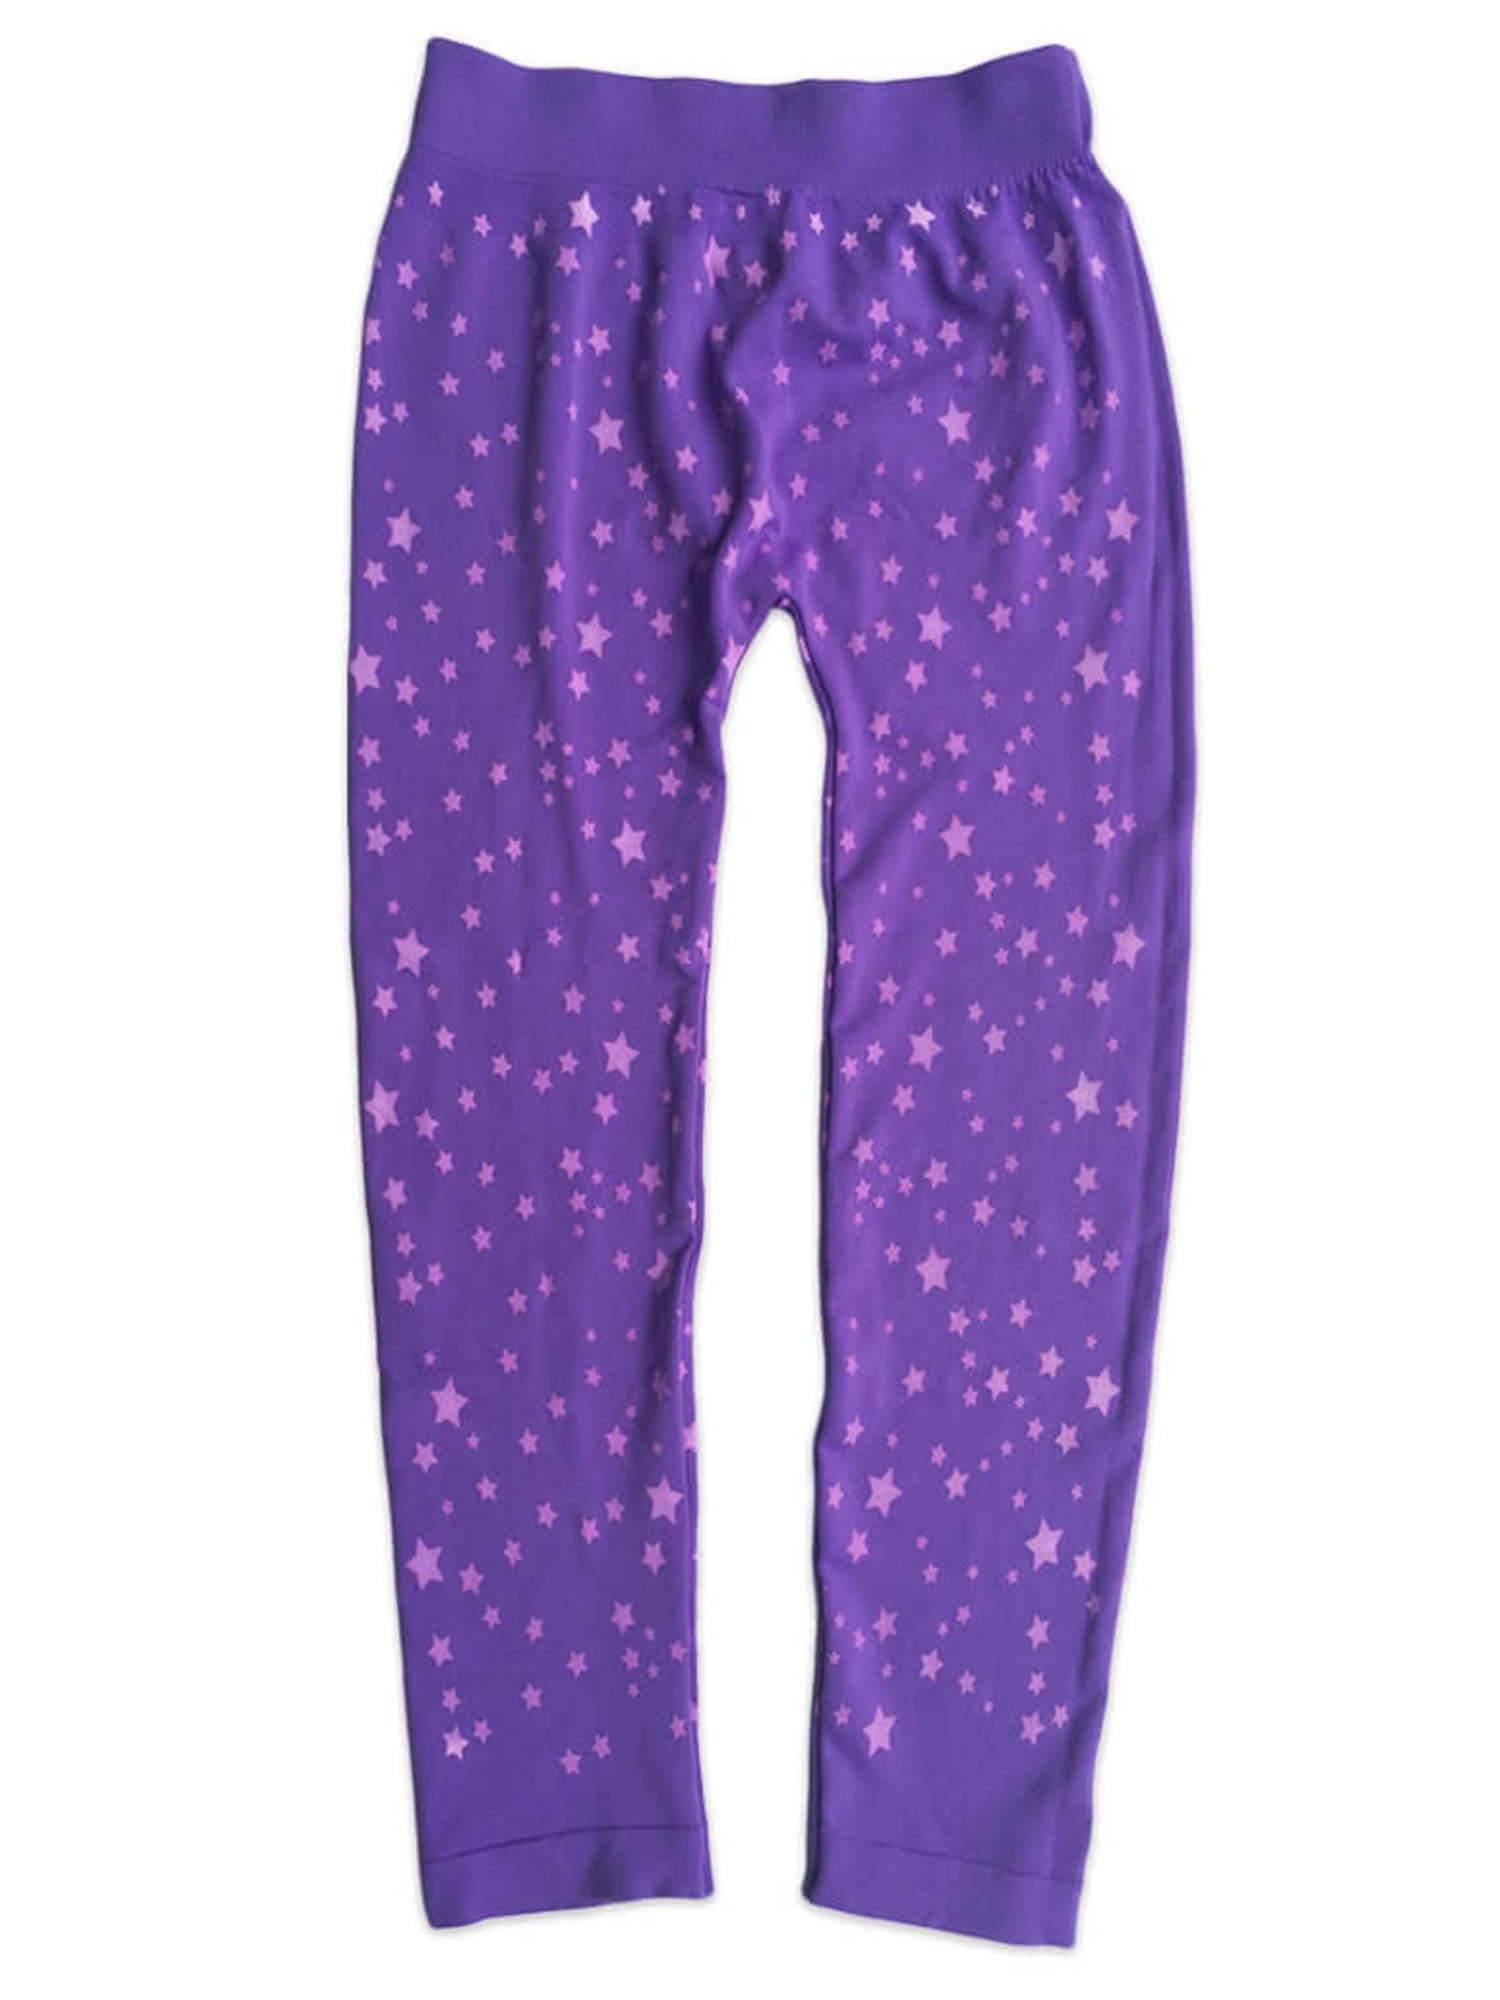 Jefferies Socks Girls Star Pattern Tights 1-Pack, Sizes XS-L - Walmart.com